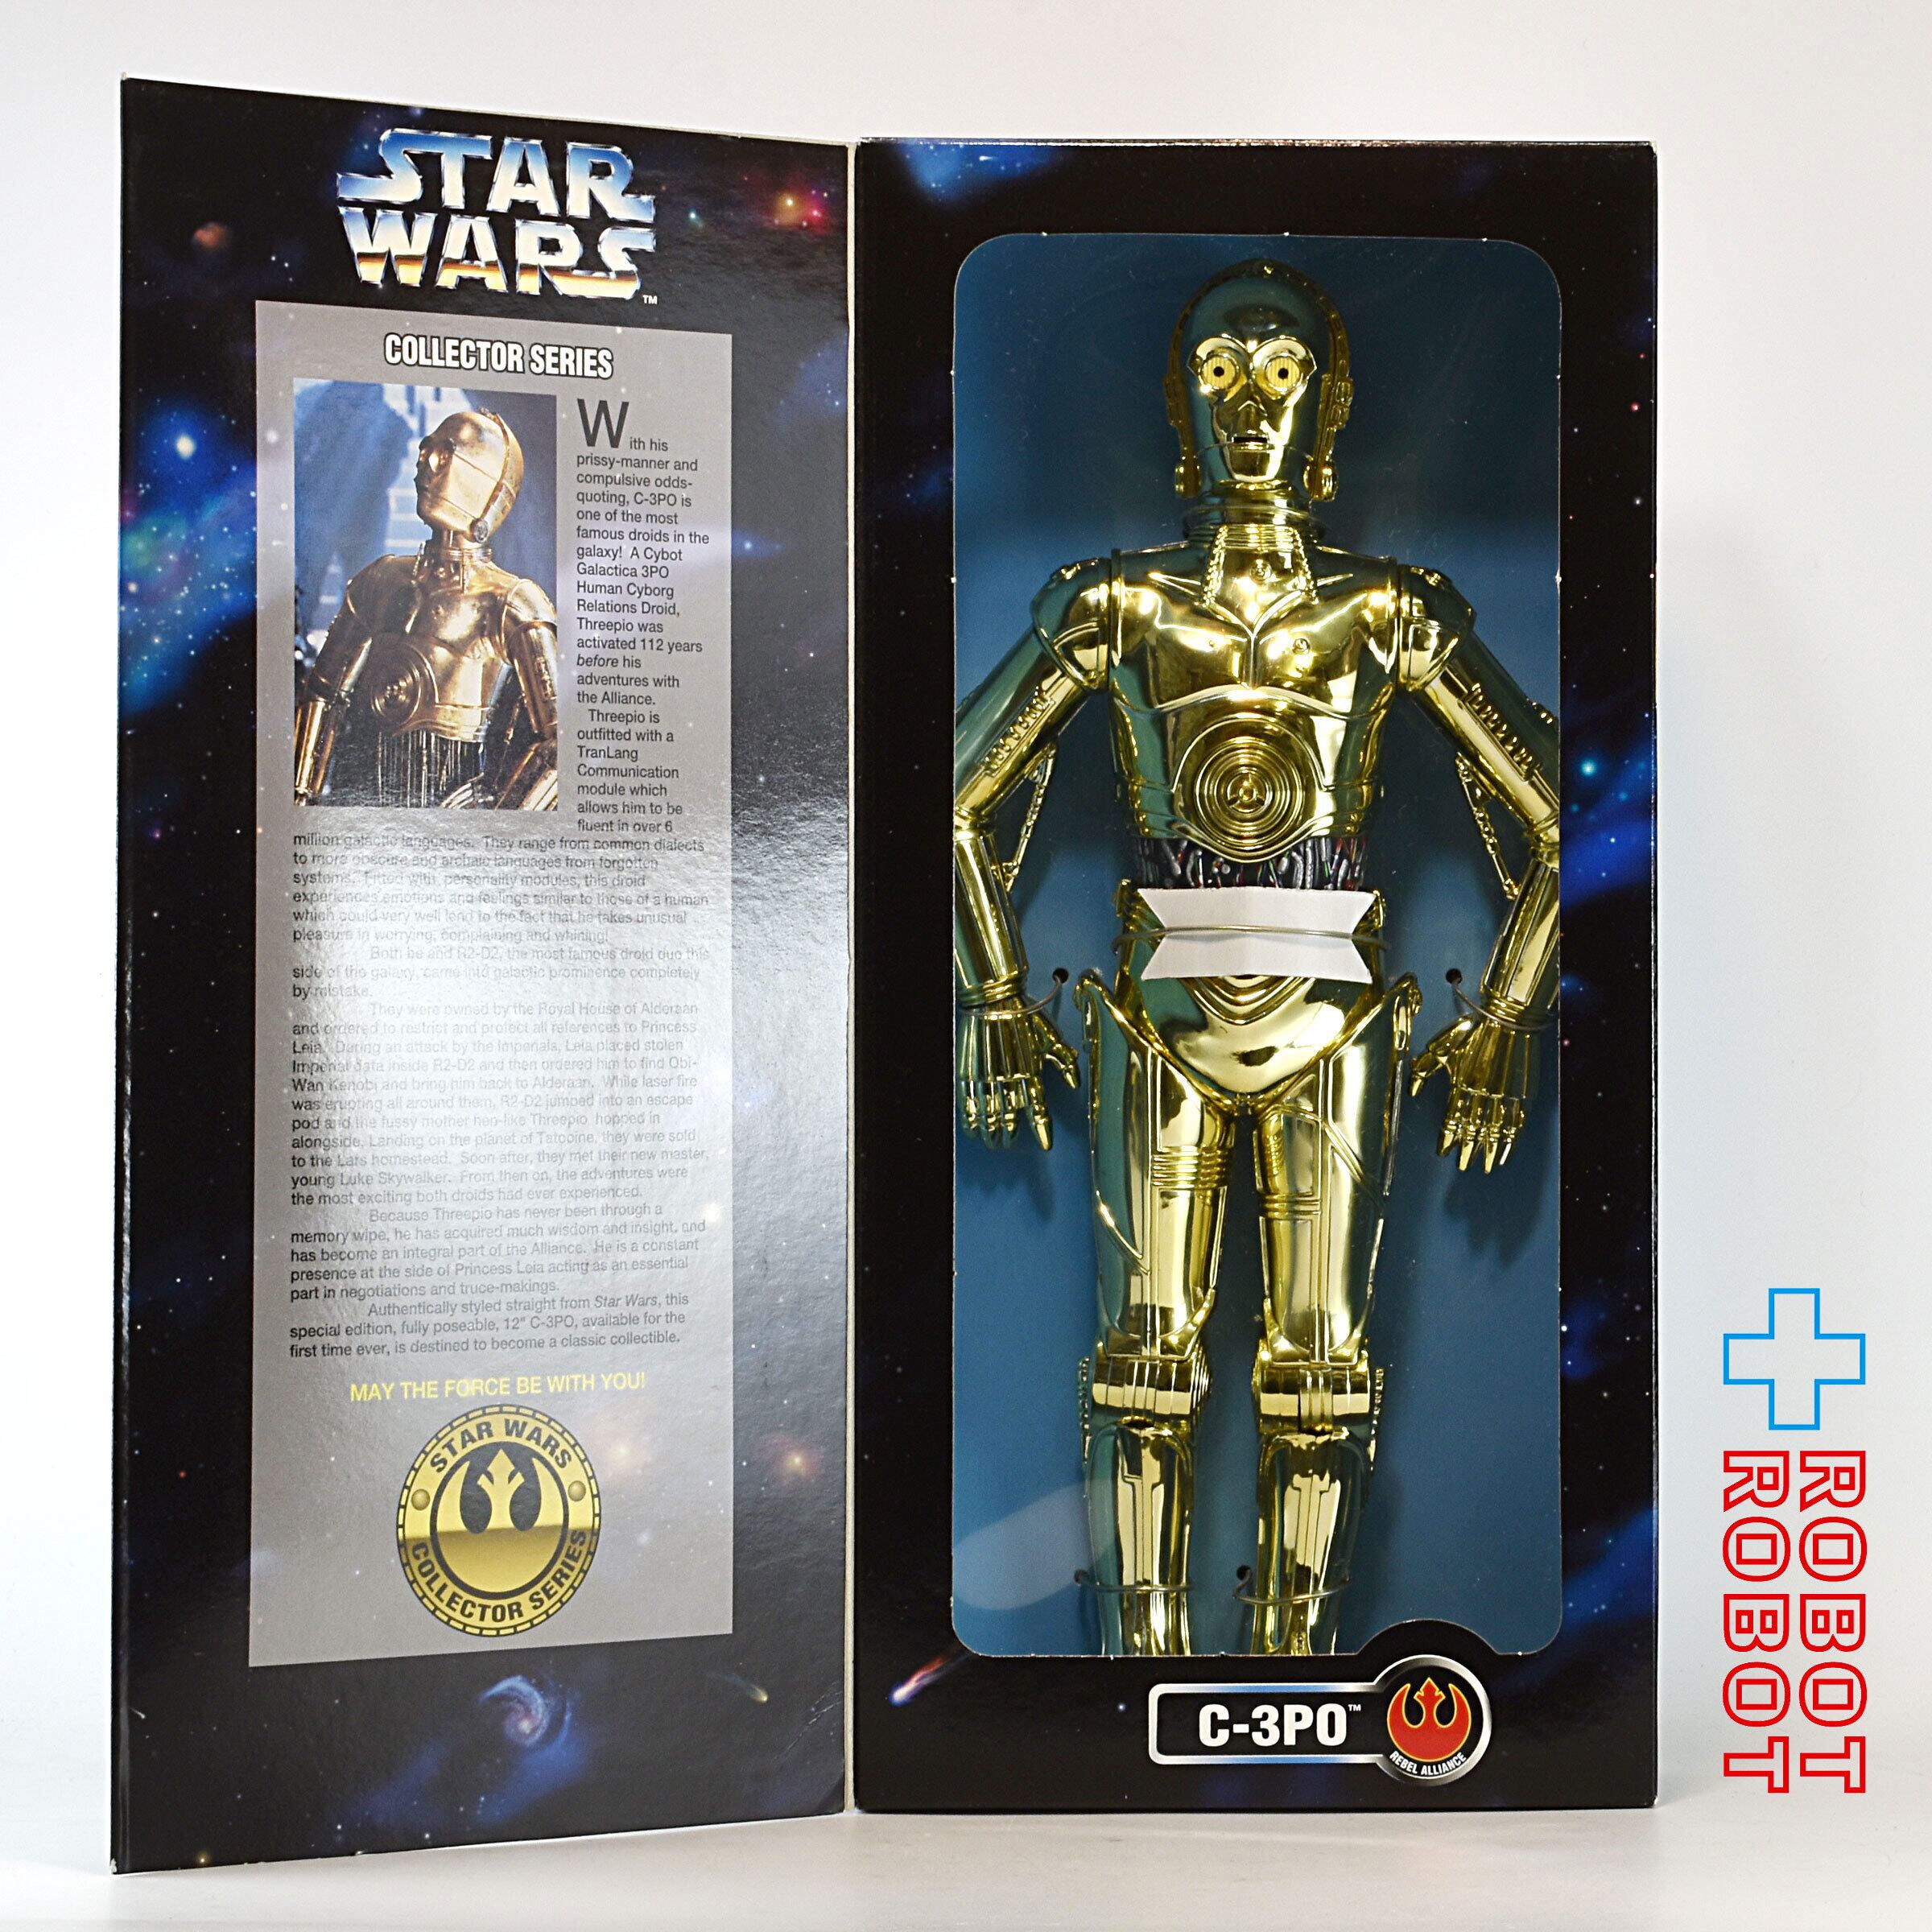 ケナー スター・ウォーズ コレクターシリーズ C-3PO 12インチ 